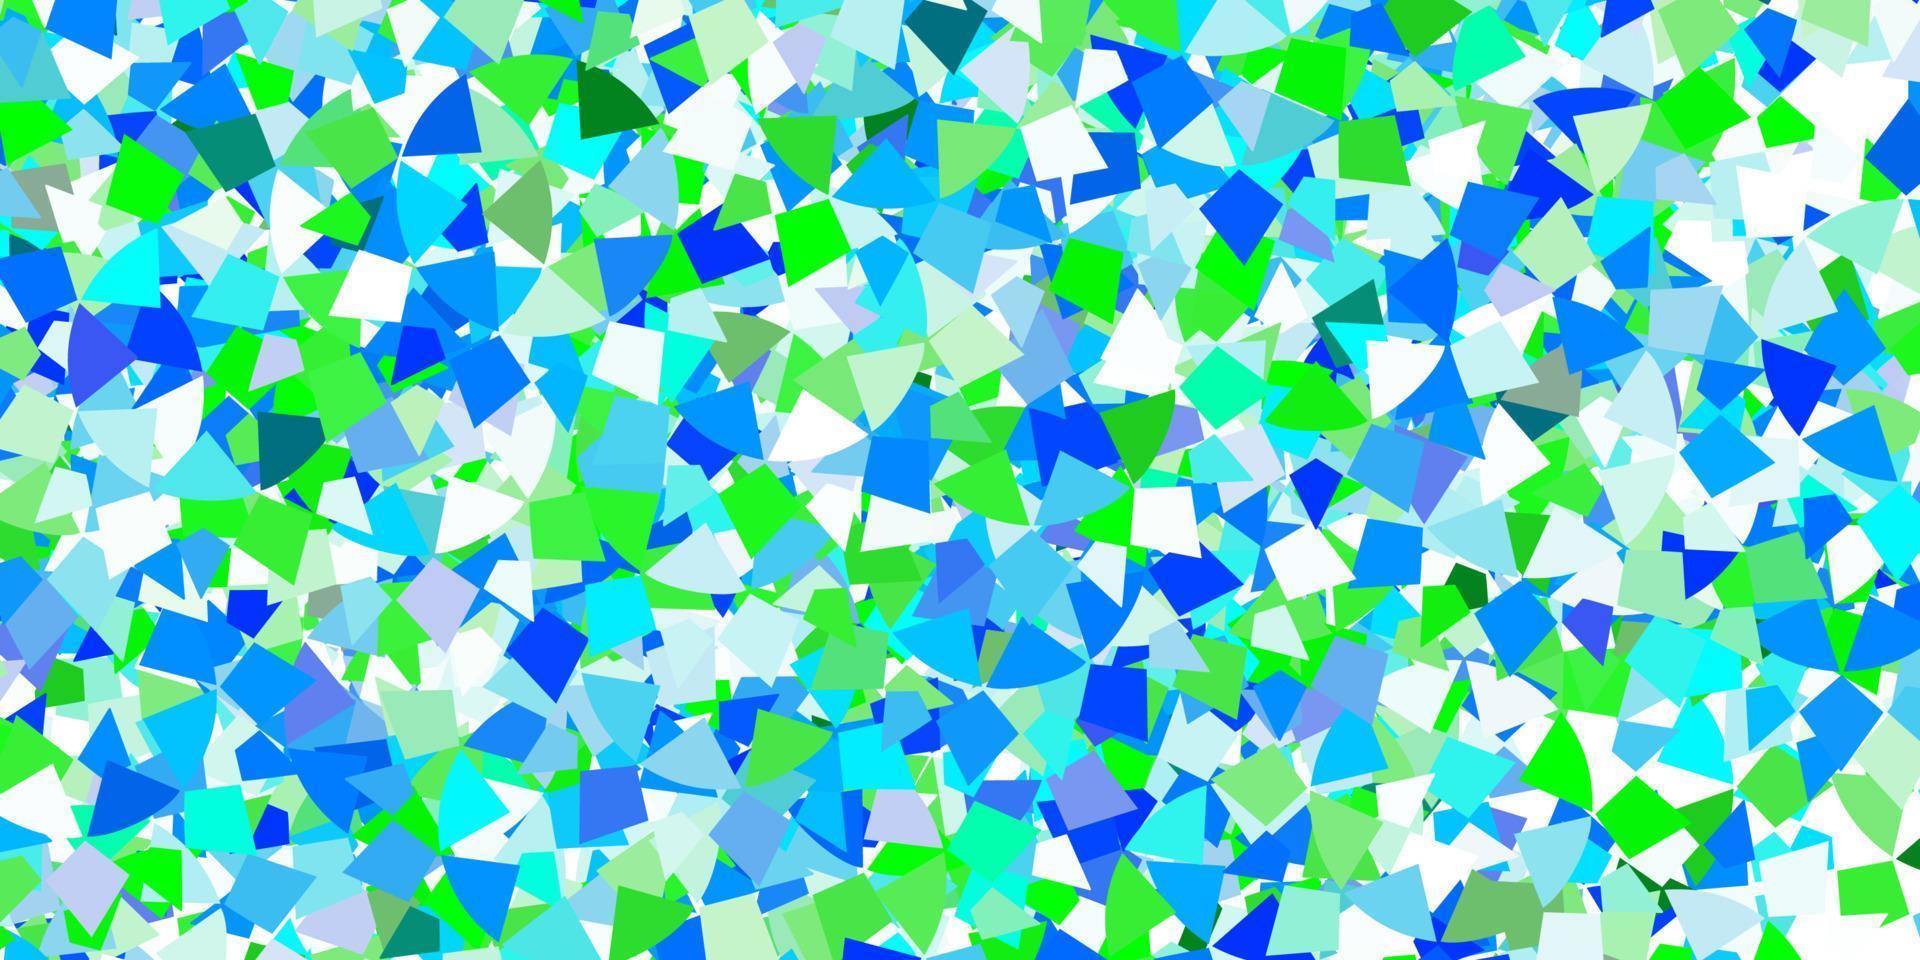 sfondo vettoriale blu chiaro con stile poligonale.